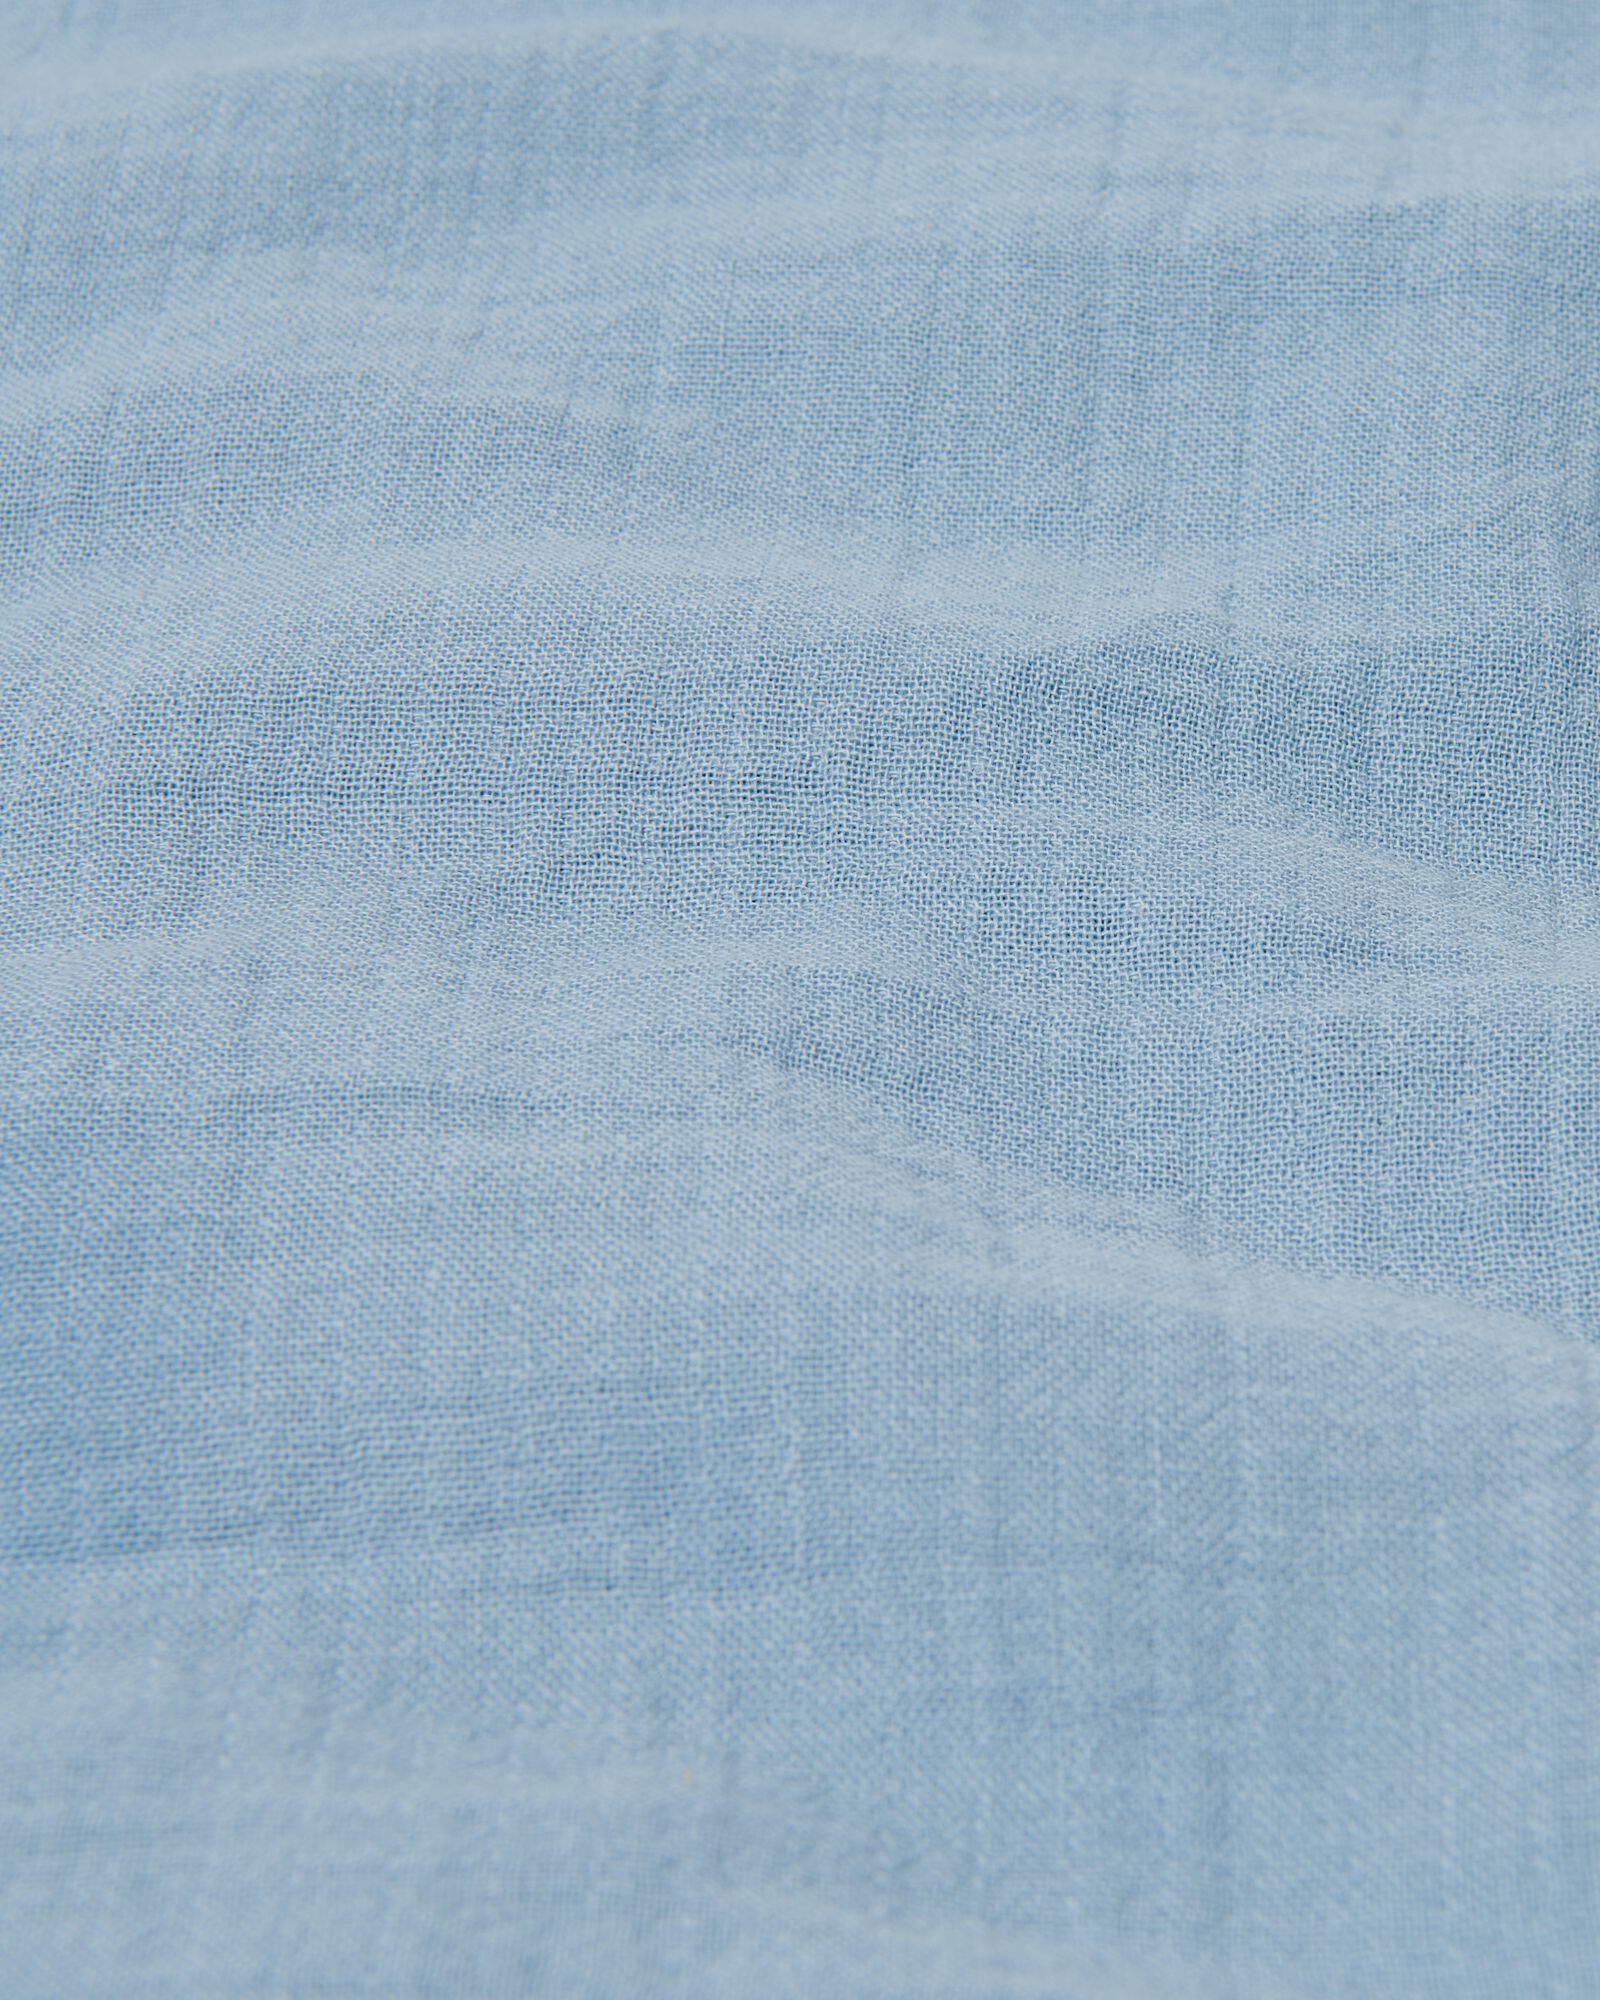 Bettwäsche, Baumwoll-Musselin, 200 x 200/220 cm, blau - 5730162 - HEMA